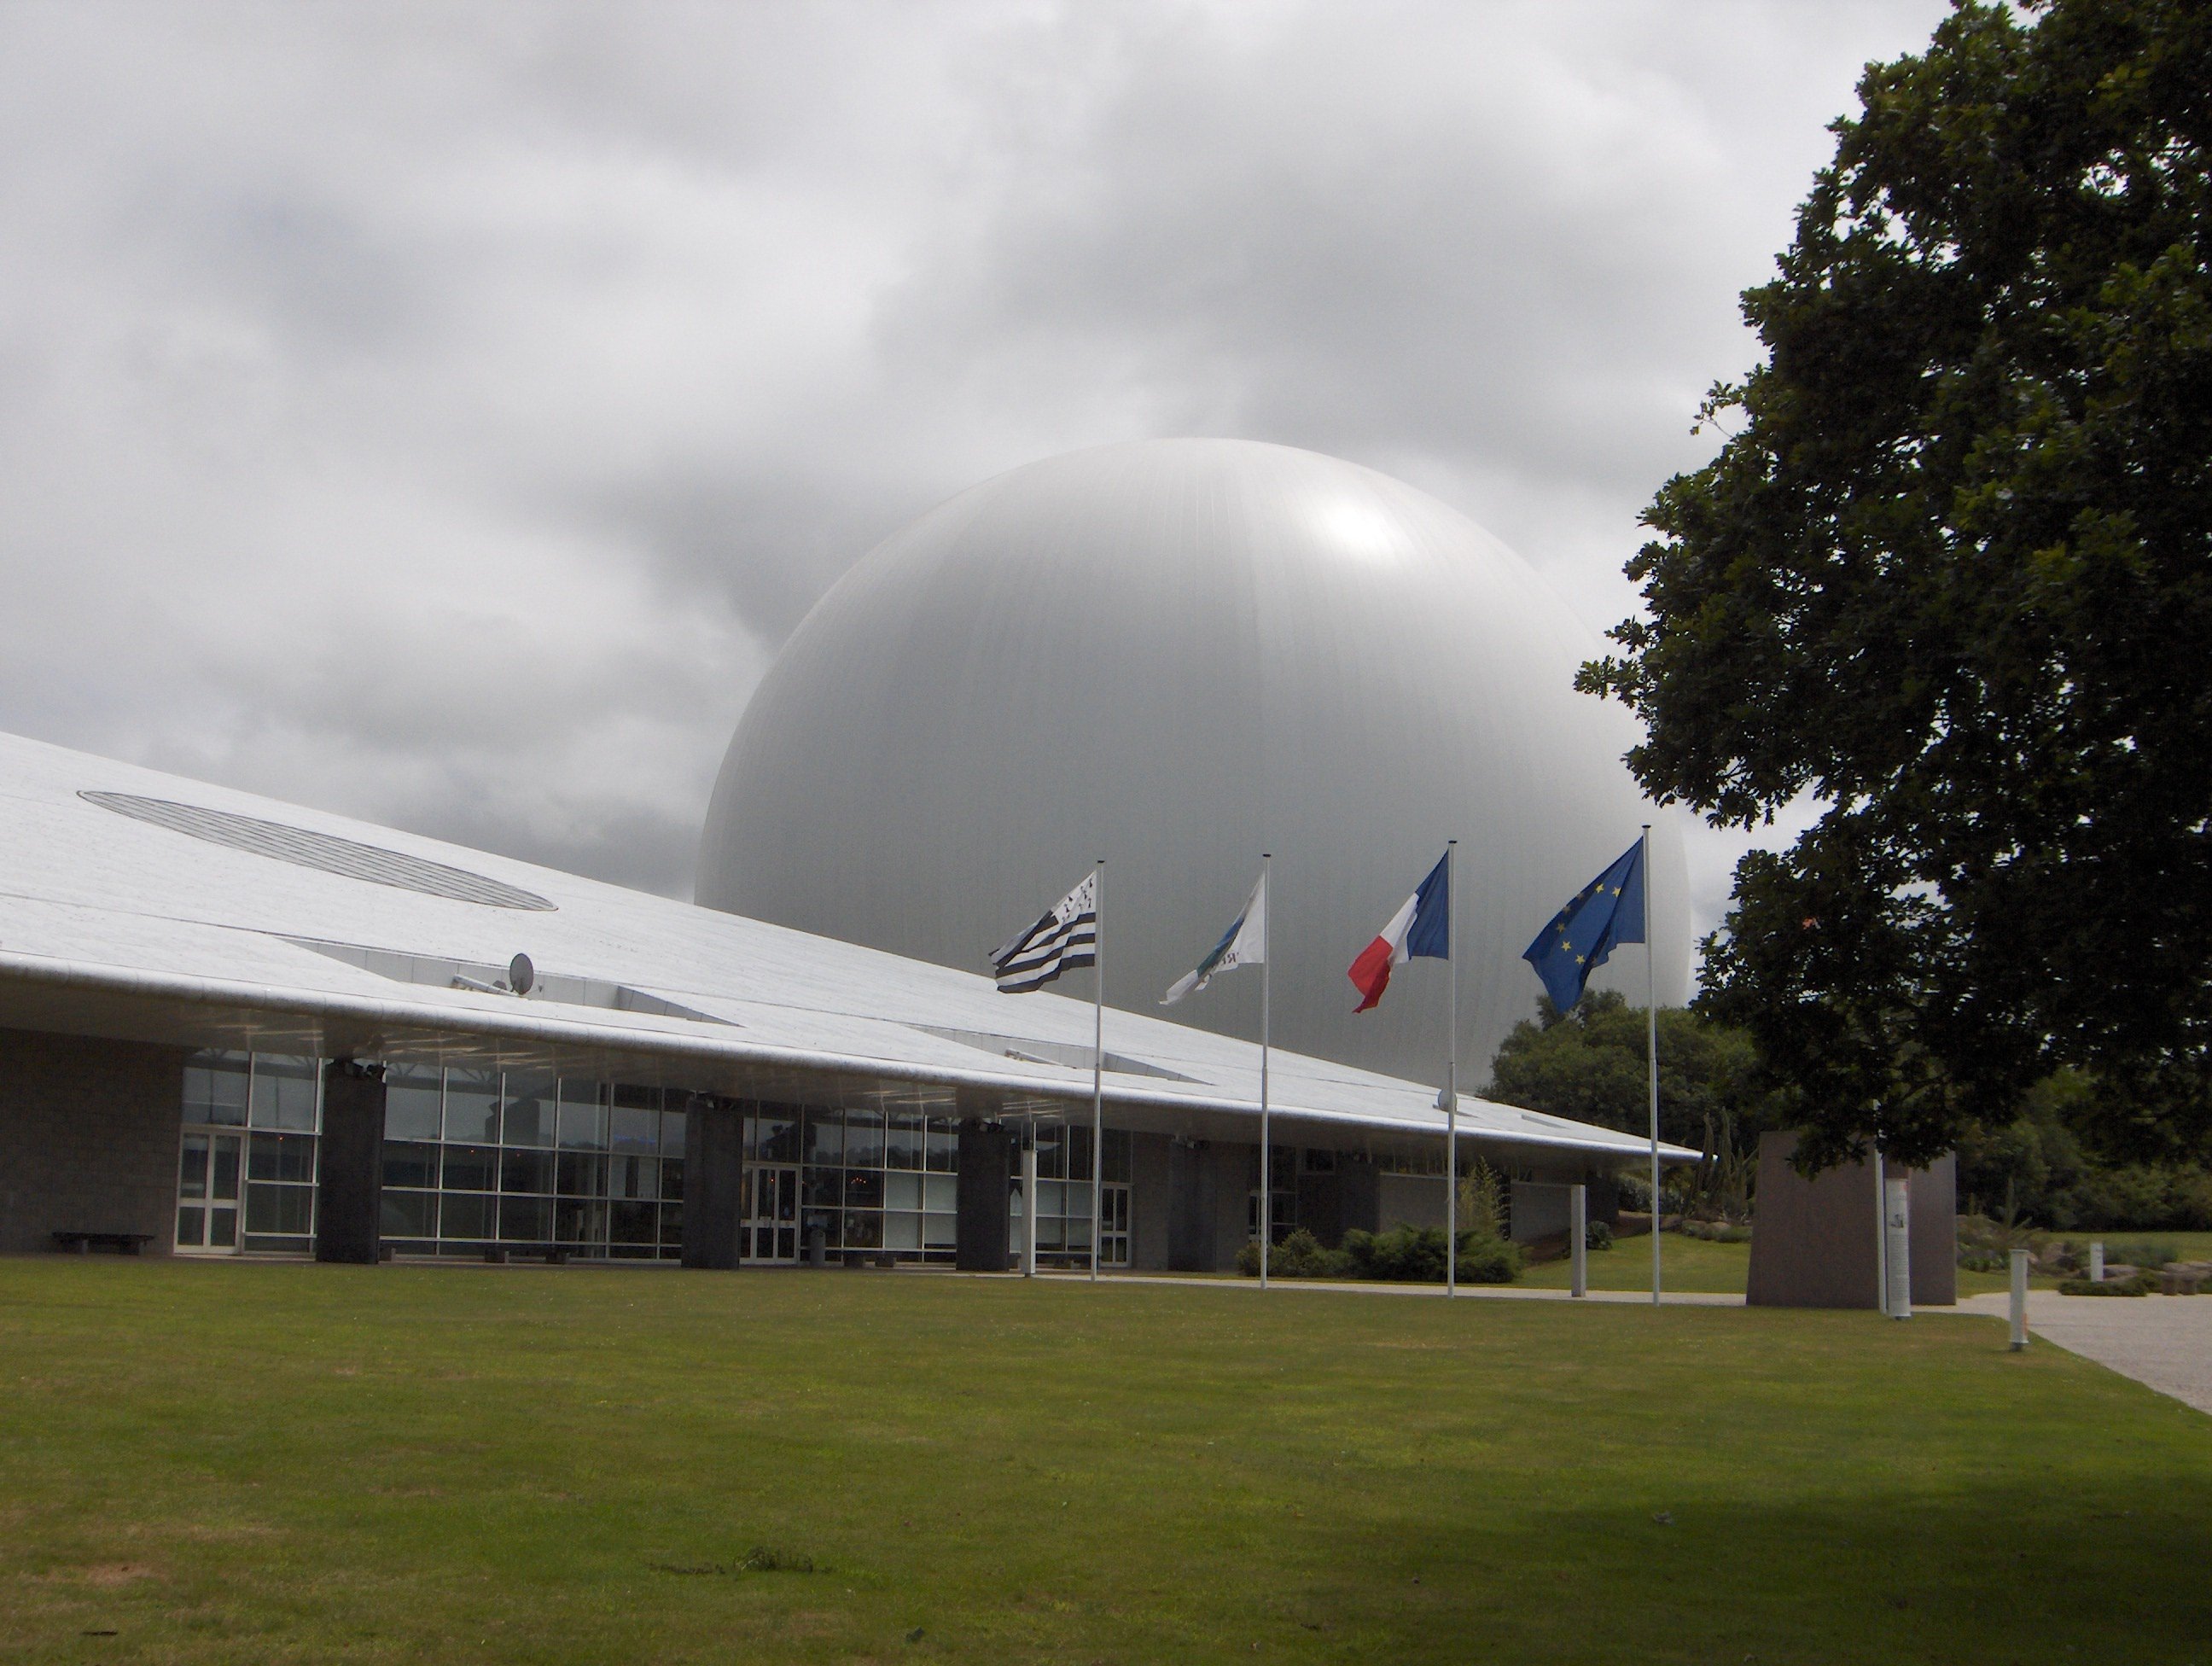 Une énorme sphère blanche dépasse devant un bâtiment triangulaire, avec quatre drapeaux devant, dont les drapeaux breton, français et européen ainsi qu'un quatrième non-identifiable ?